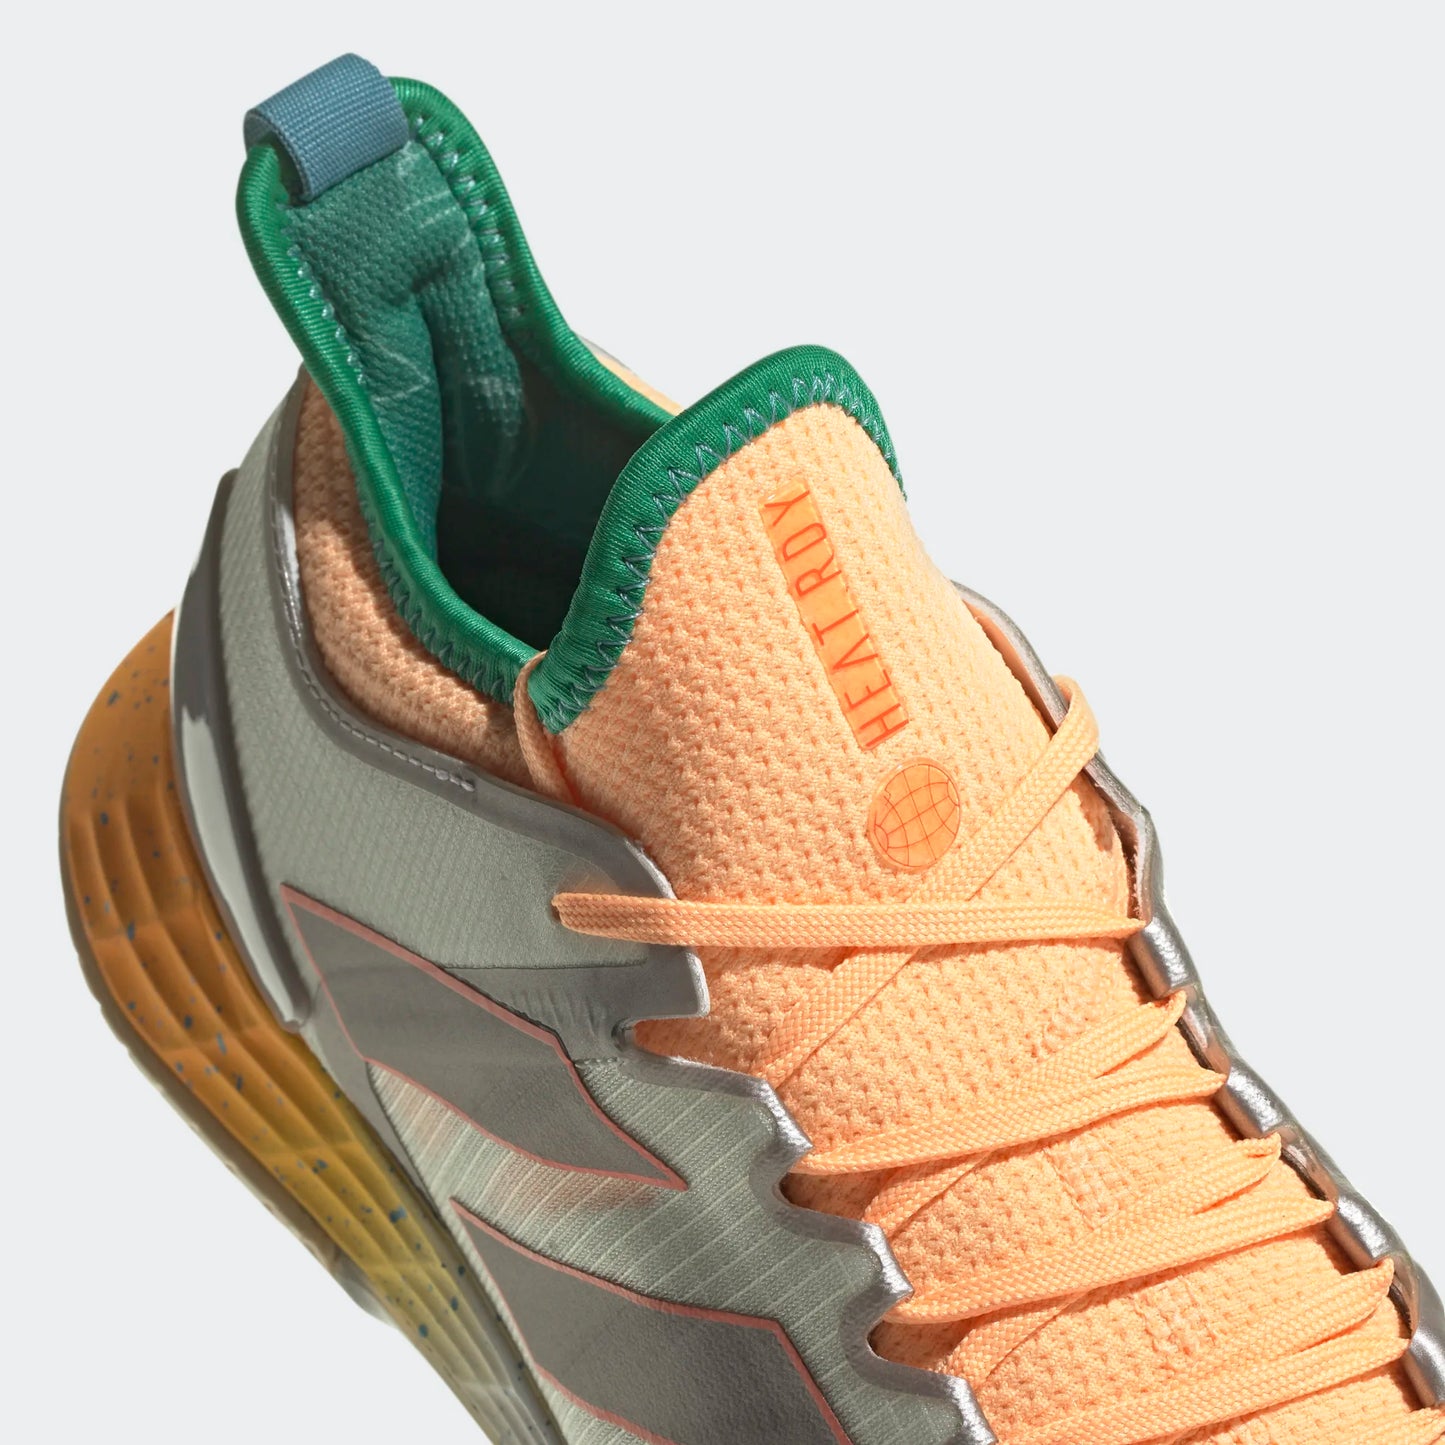 adidas Adizero Ubersonic 4 men tennis shoes - Taumet/Orange HQ8389